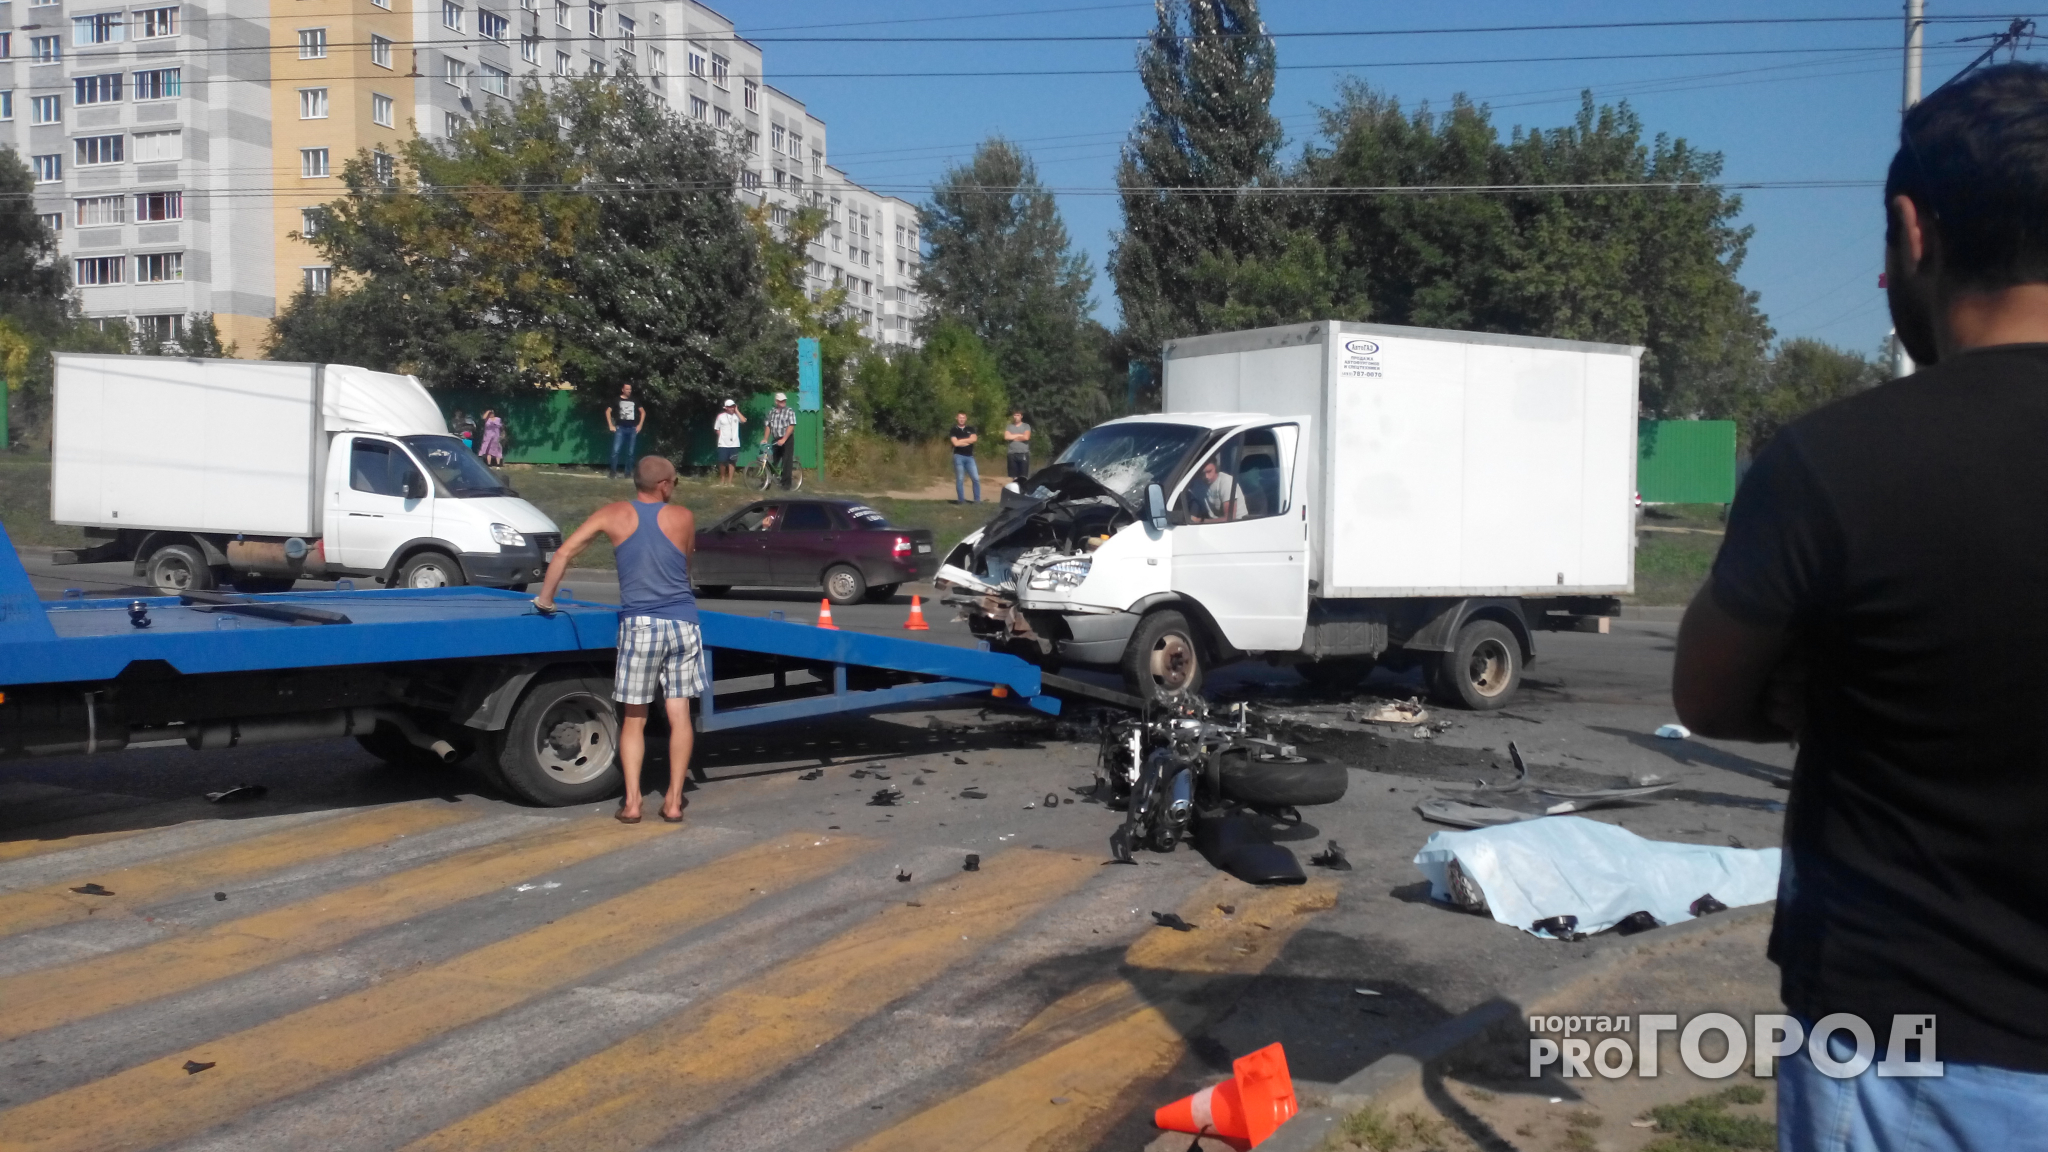 Ярославские правоохранители предложат водителям сфотографироваться на фоне последствий ДТП